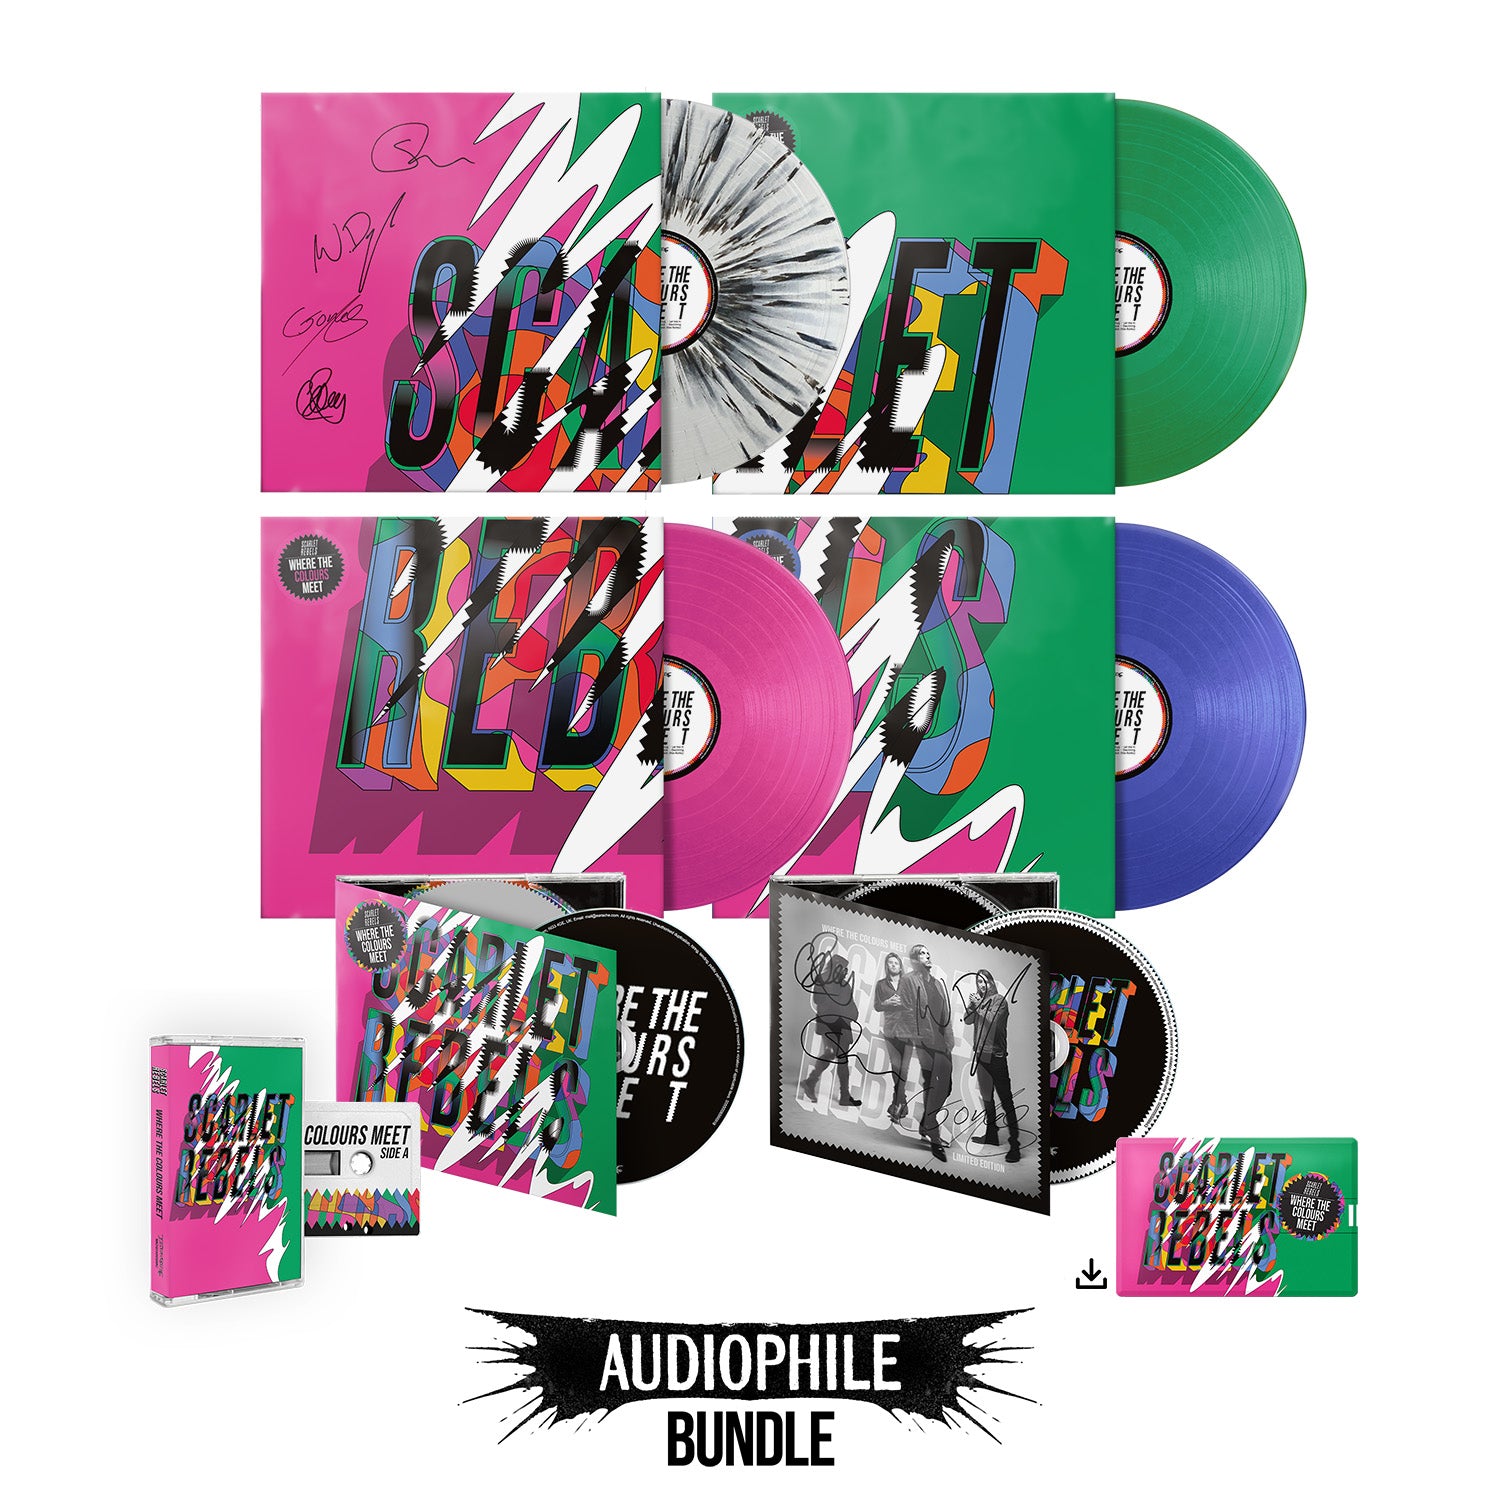 Scarlet Rebels "Where The Colours Meet" Audiophile Bundle - Splatter, Pink, Green & Blue, Signed CD, Regular CD, Cassette Tape, USB & Download - PRE-ORDER